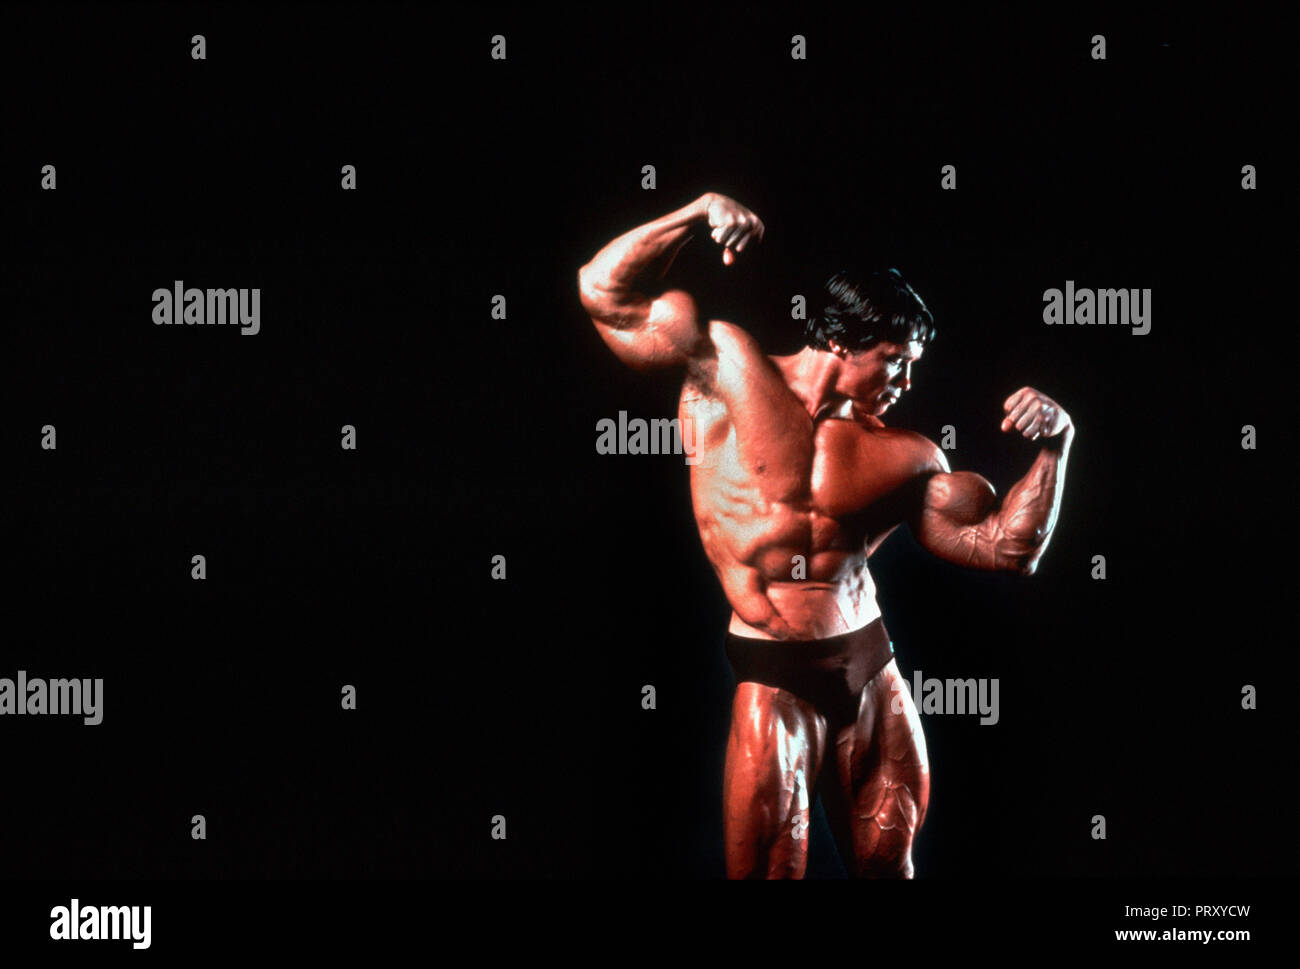 Arnold Schwarzenegger Bodybuilding Stock Photos Arnold Images, Photos, Reviews